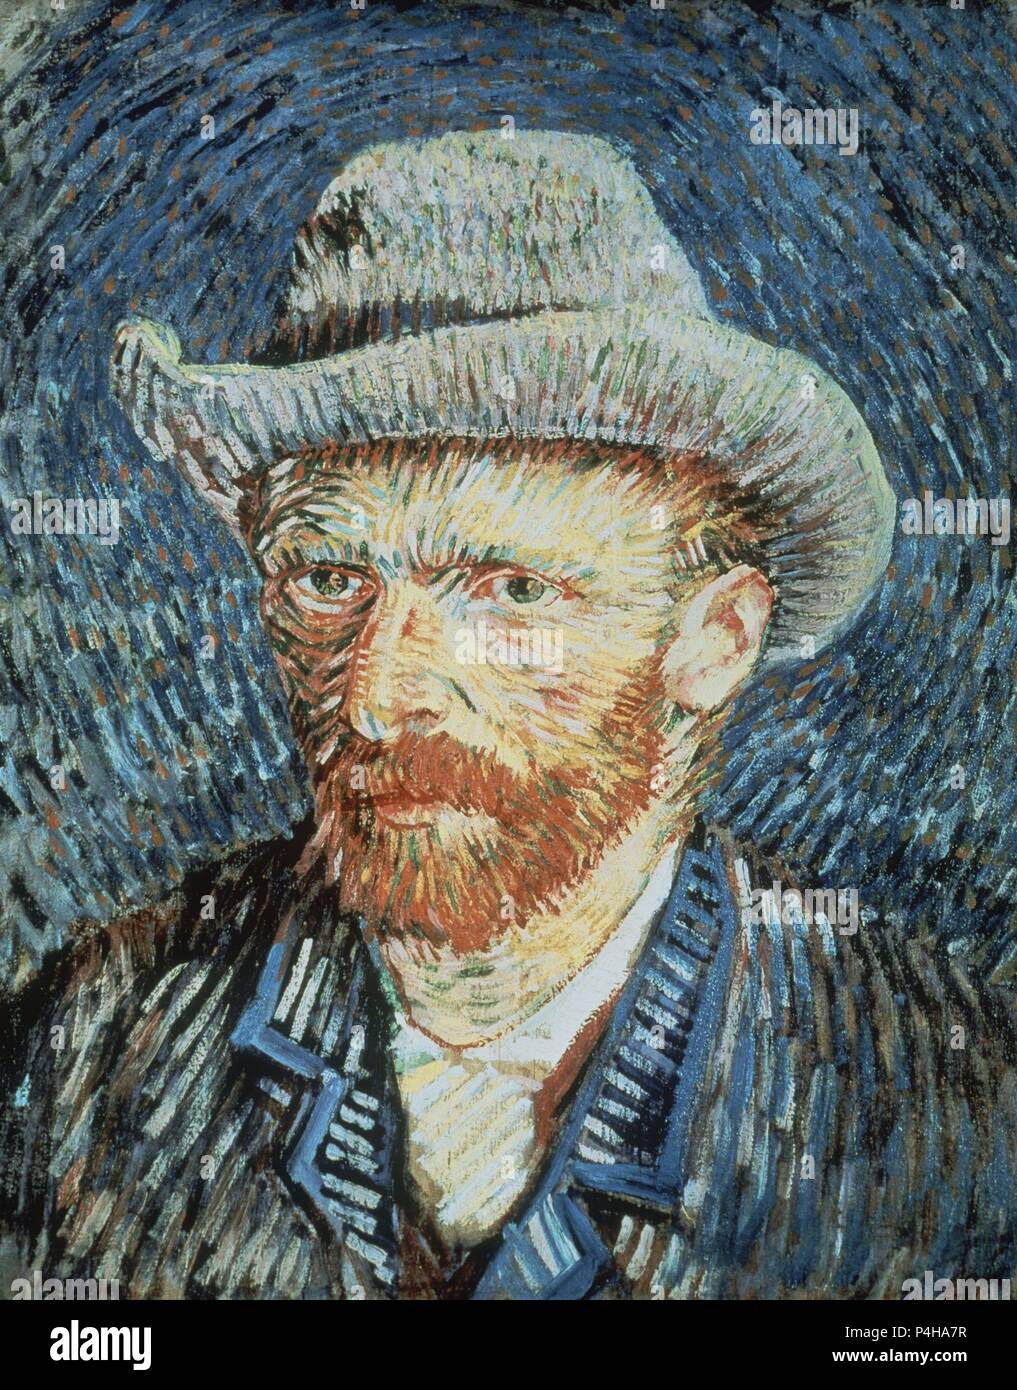 Selbstportrait mit Filzhut - 1887/88 - 44 x 37,5 cm, Öl auf Leinwand. Autor: Vincent van Gogh (1853-1890). Ort: Van Gogh Museum, Amsterdam, HOLANDA. Auch als: AUTORRETRATO CON SOMBRERO DE FIELTRO GRIS bekannt. Stockfoto